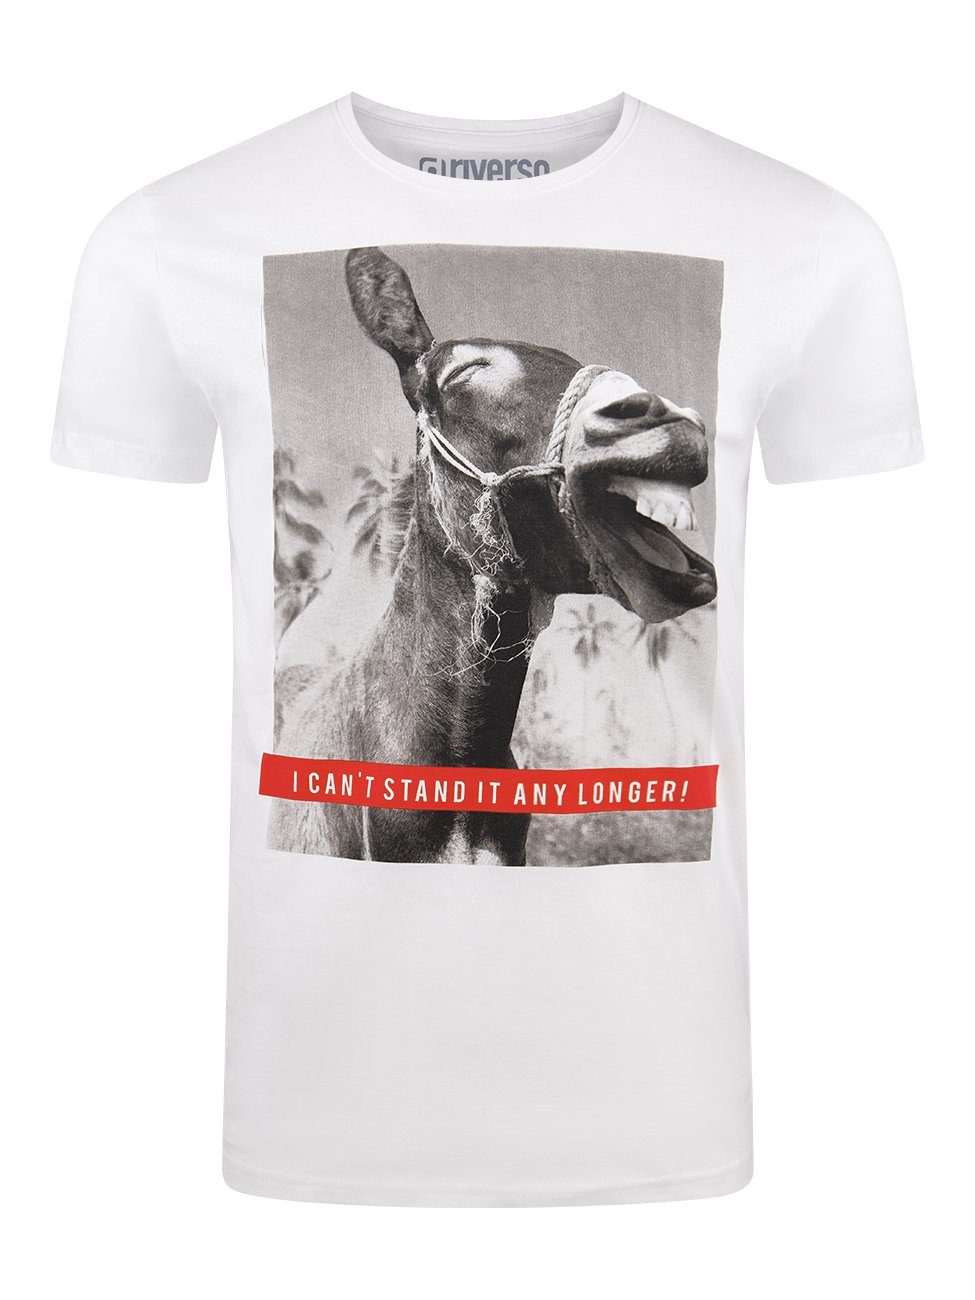 (IJD) Baumwolle mit Shirt aus Tee Rundhalsausschnitt RIVCharly (1-tlg) 100% Herren Weiß riverso Fotoprintshirt Esel Fit T-Shirt Kurzarm Regular